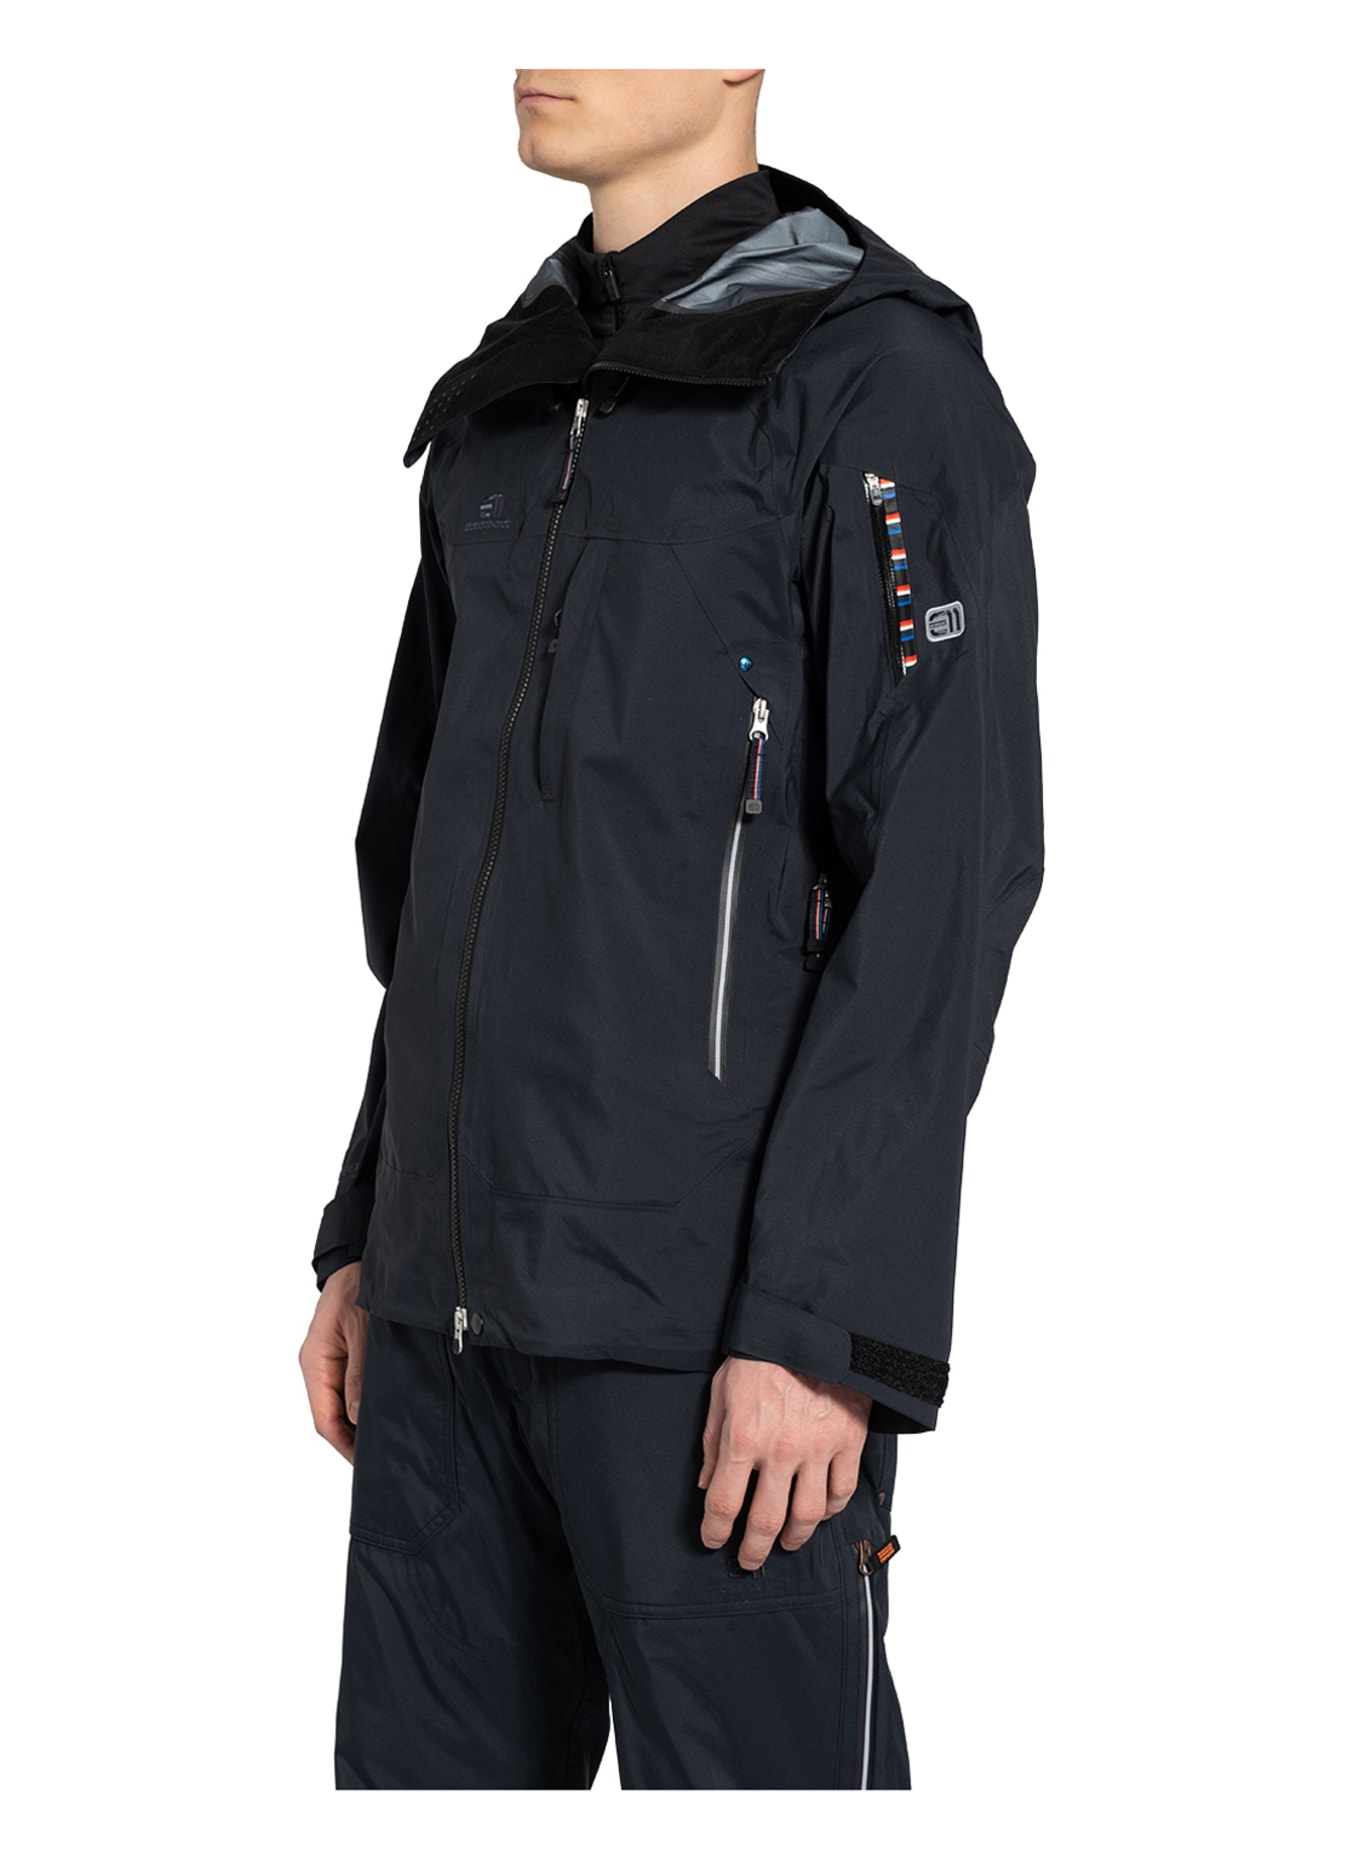 state of elevenate Ski jacket BEC DE ROSSES, Color: BLACK (Image 7)